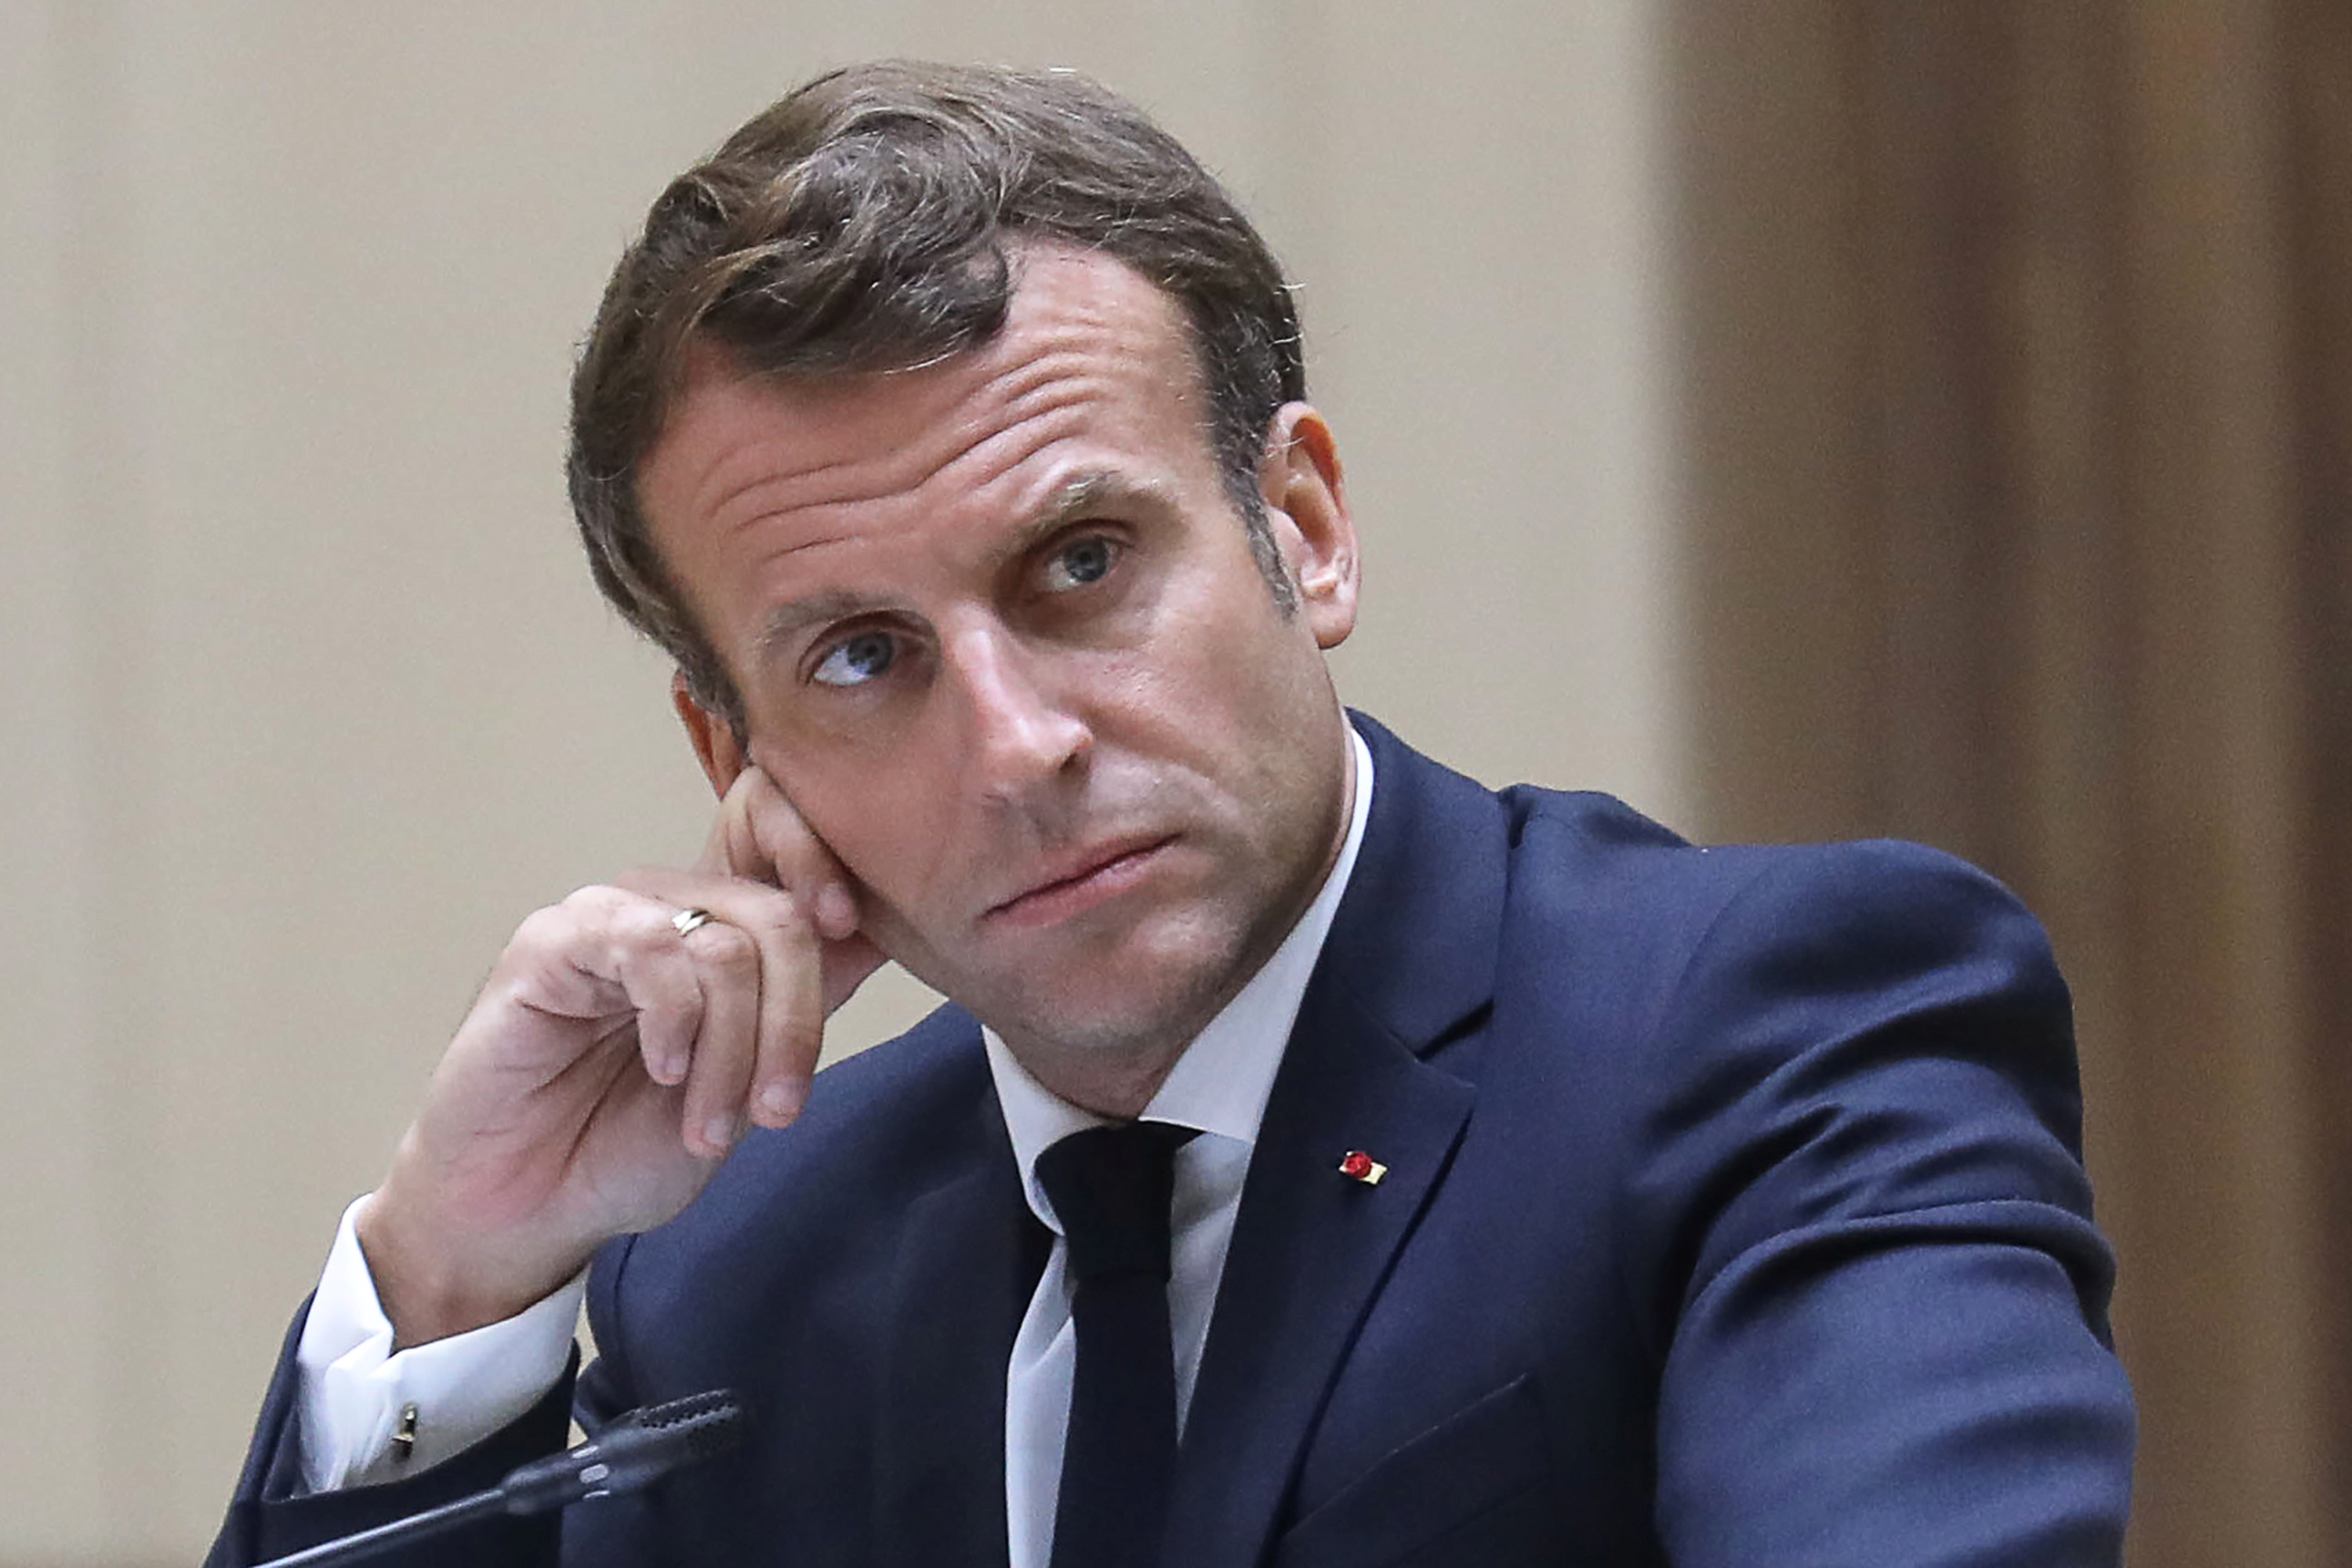 Réforme des retraites, plan de relance... : les principales annonces d'Emmanuel Macron